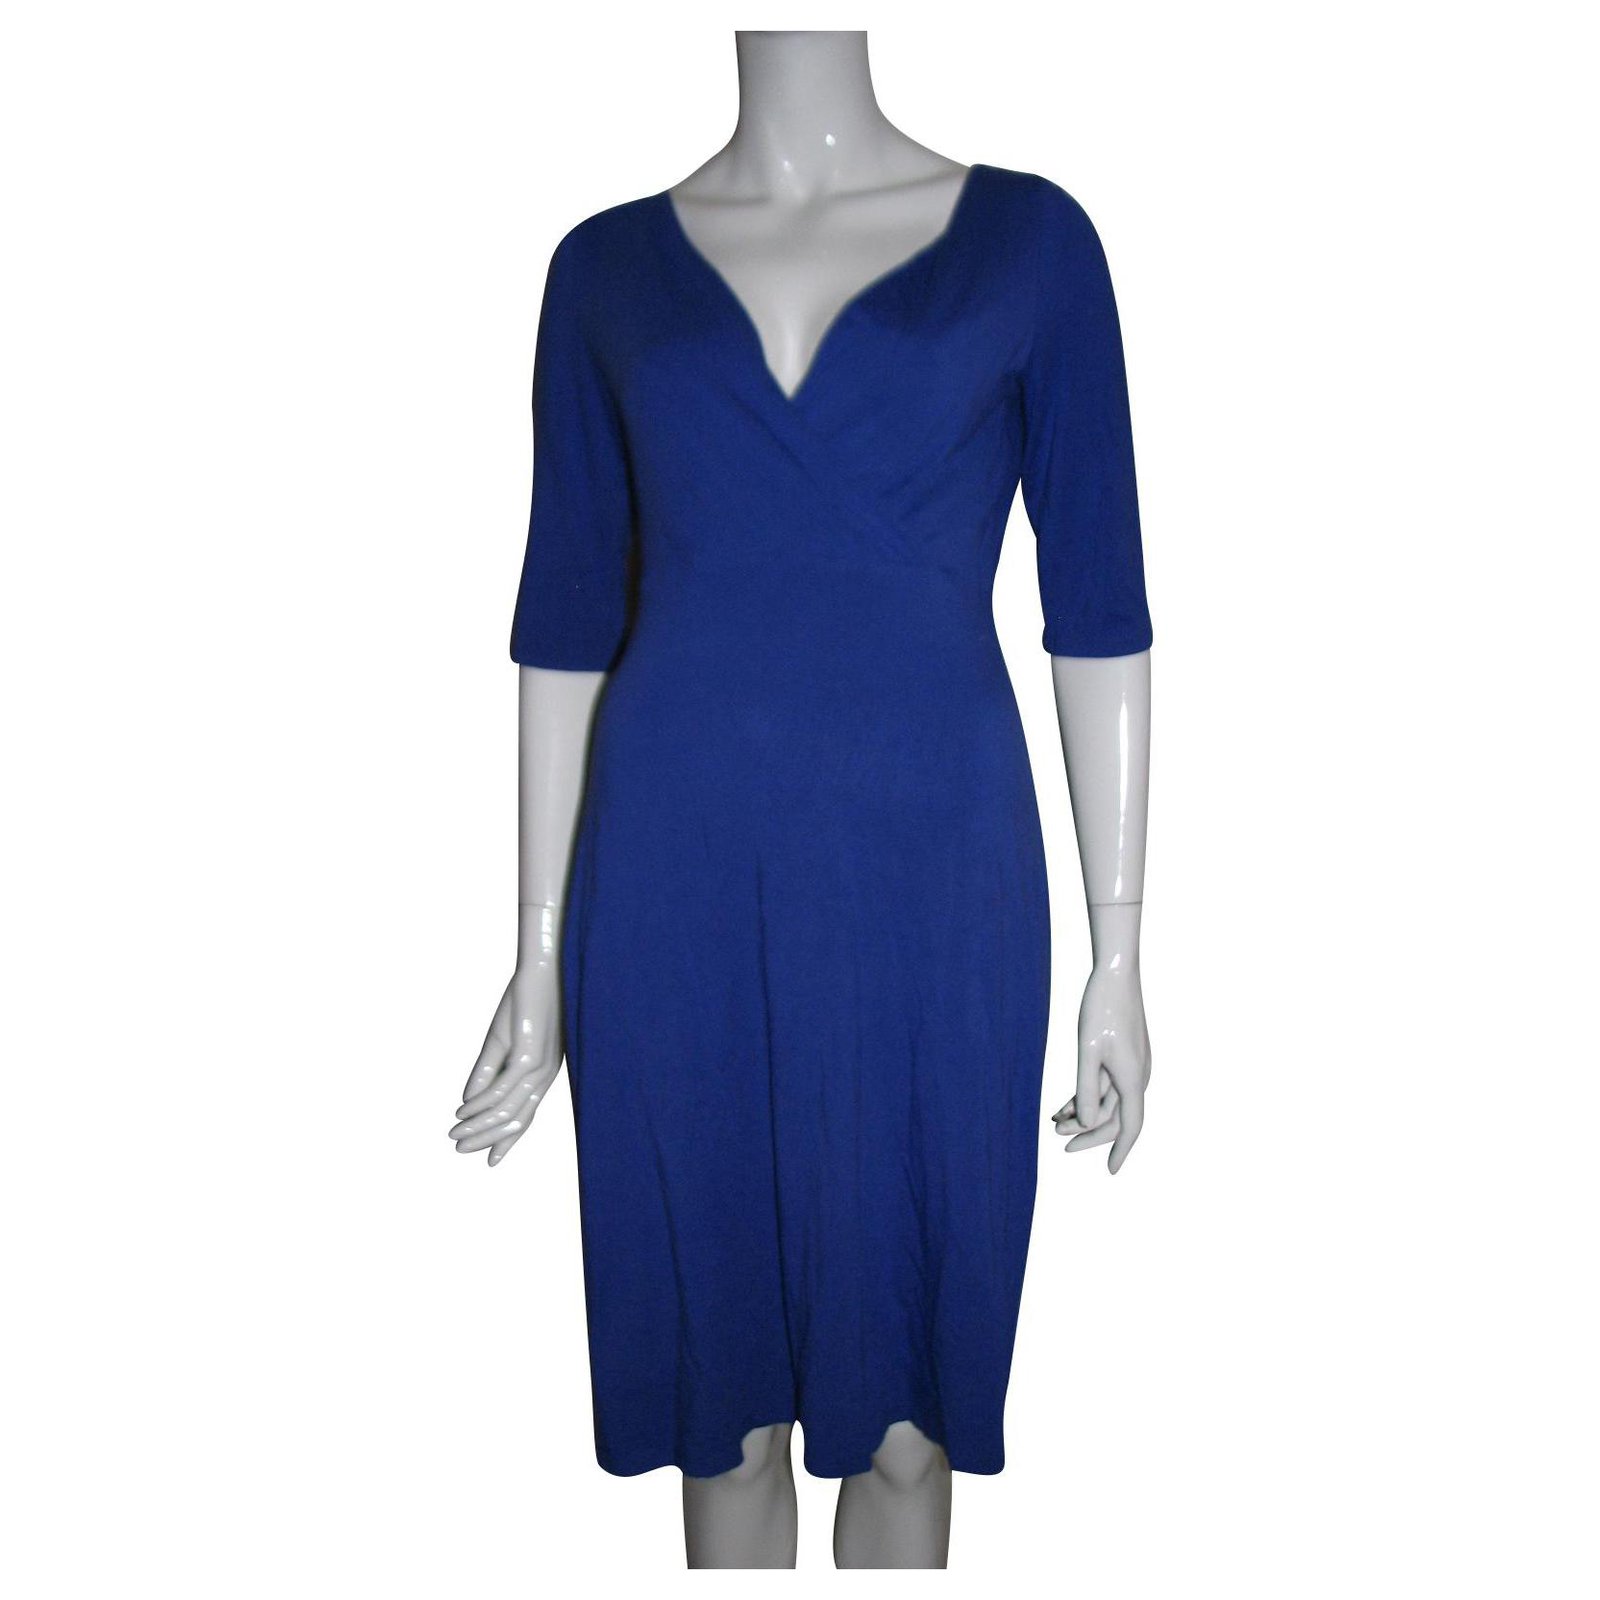 Lk Bennett Royal blue dress as seeen on ...